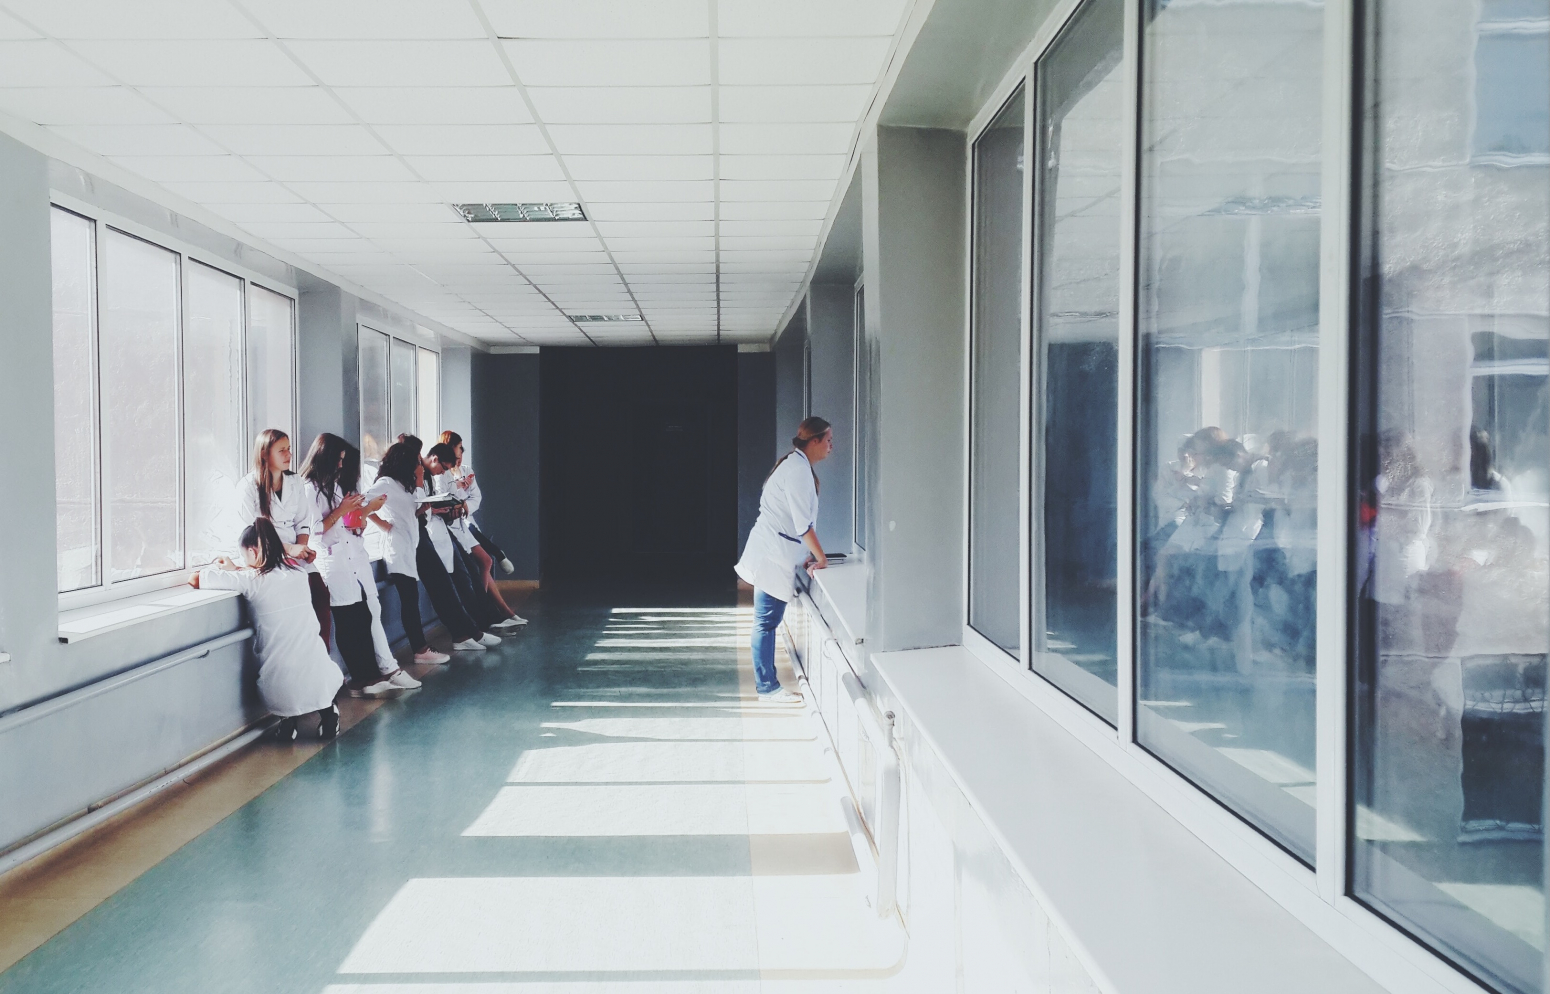 Photo de jeunes médecins dans un couloir d'hôpital illustrant le récent sondage onepoint Odoxa sur la place de la santé dans le débat présidentiel